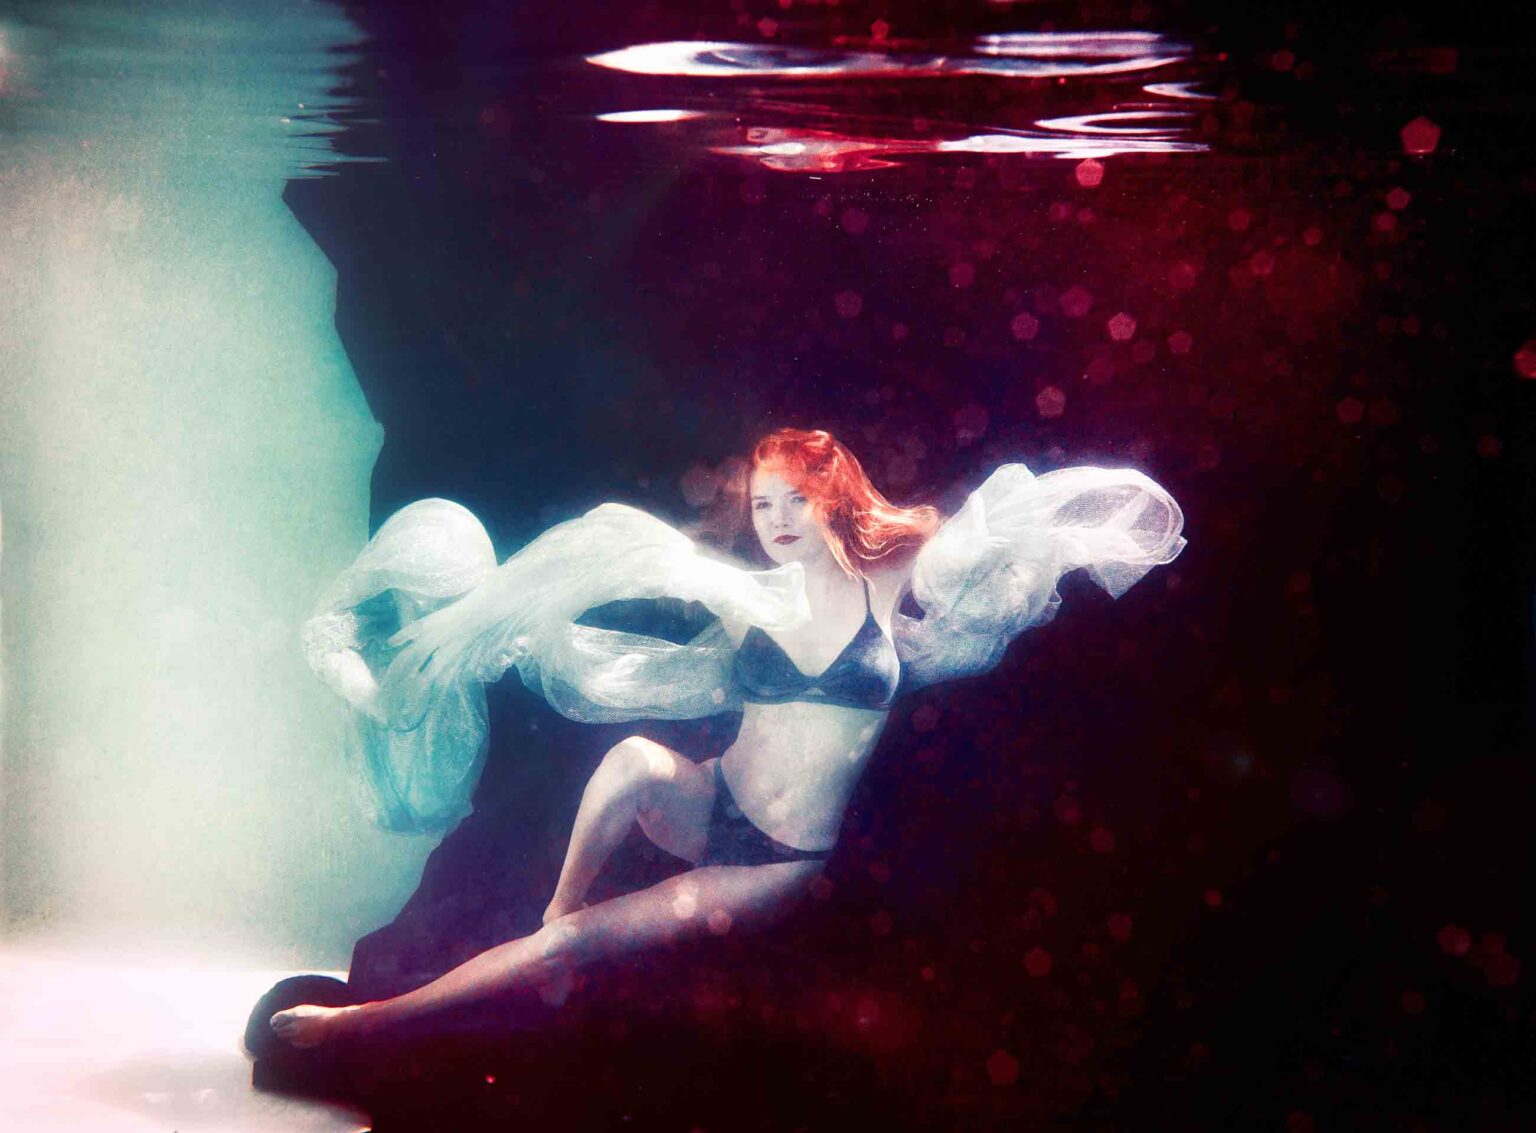 unterwasser shooting aussergewöhnlich fotografie Glamour Magic Portrait fineart Berlin underwater